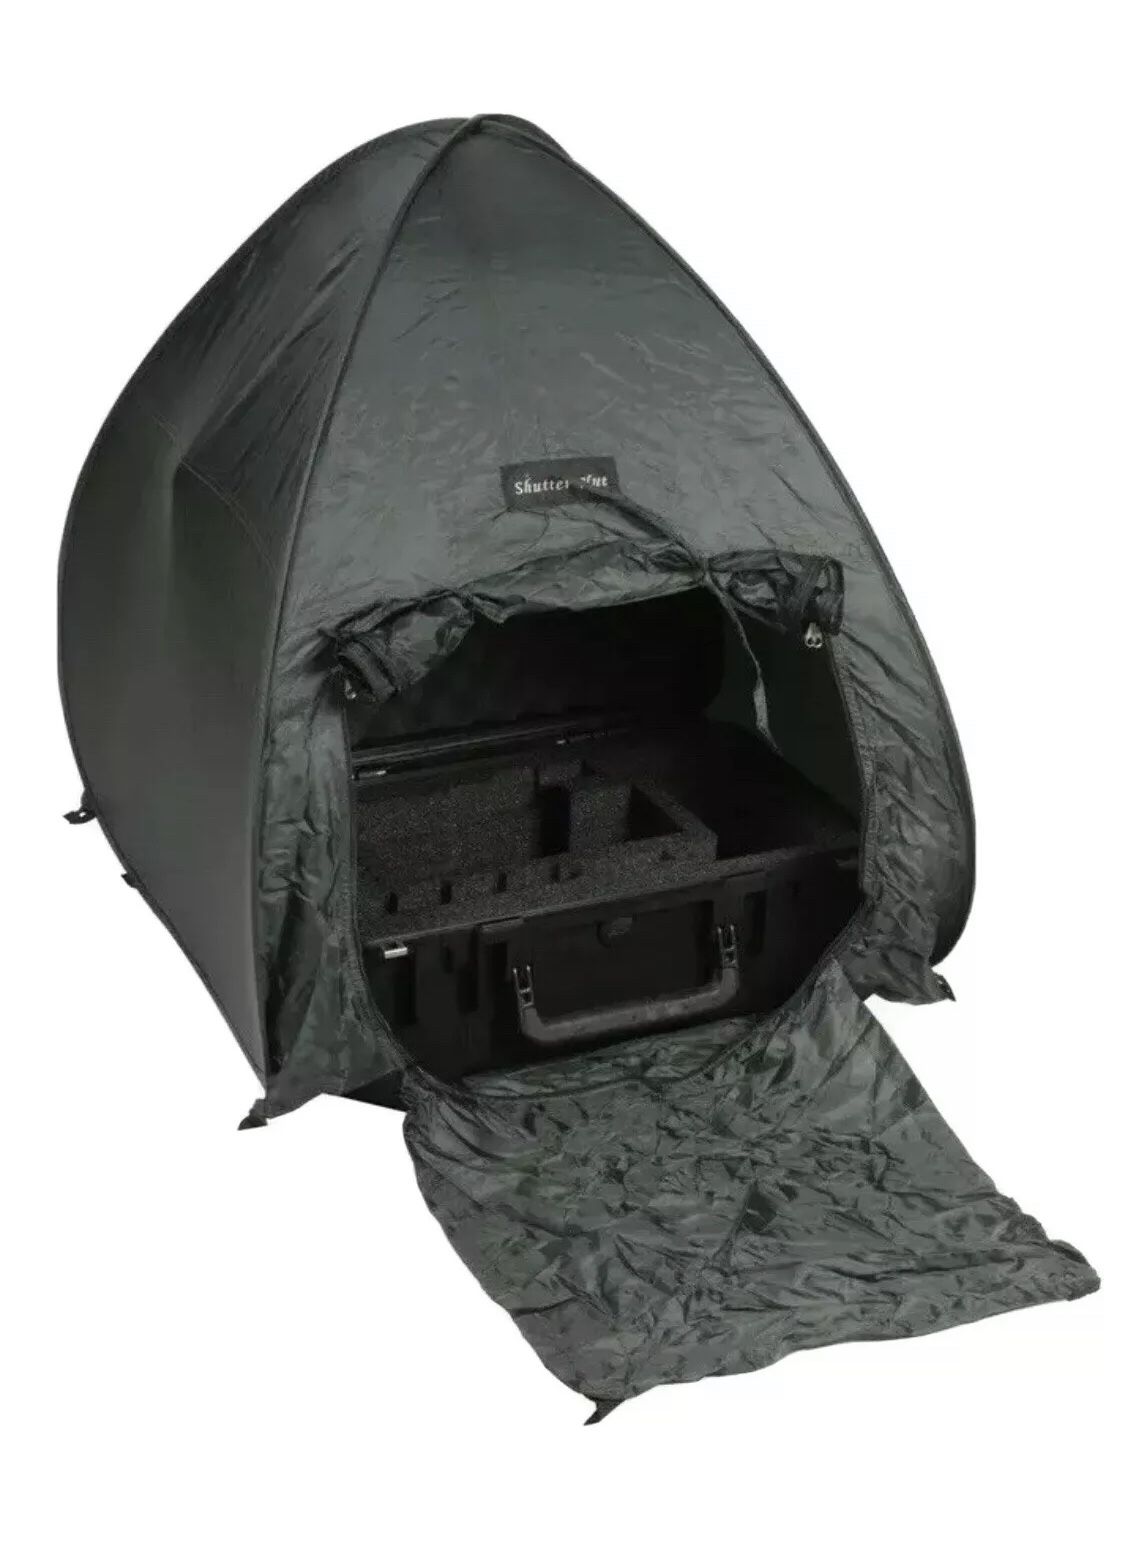 Shutter Hut Tent